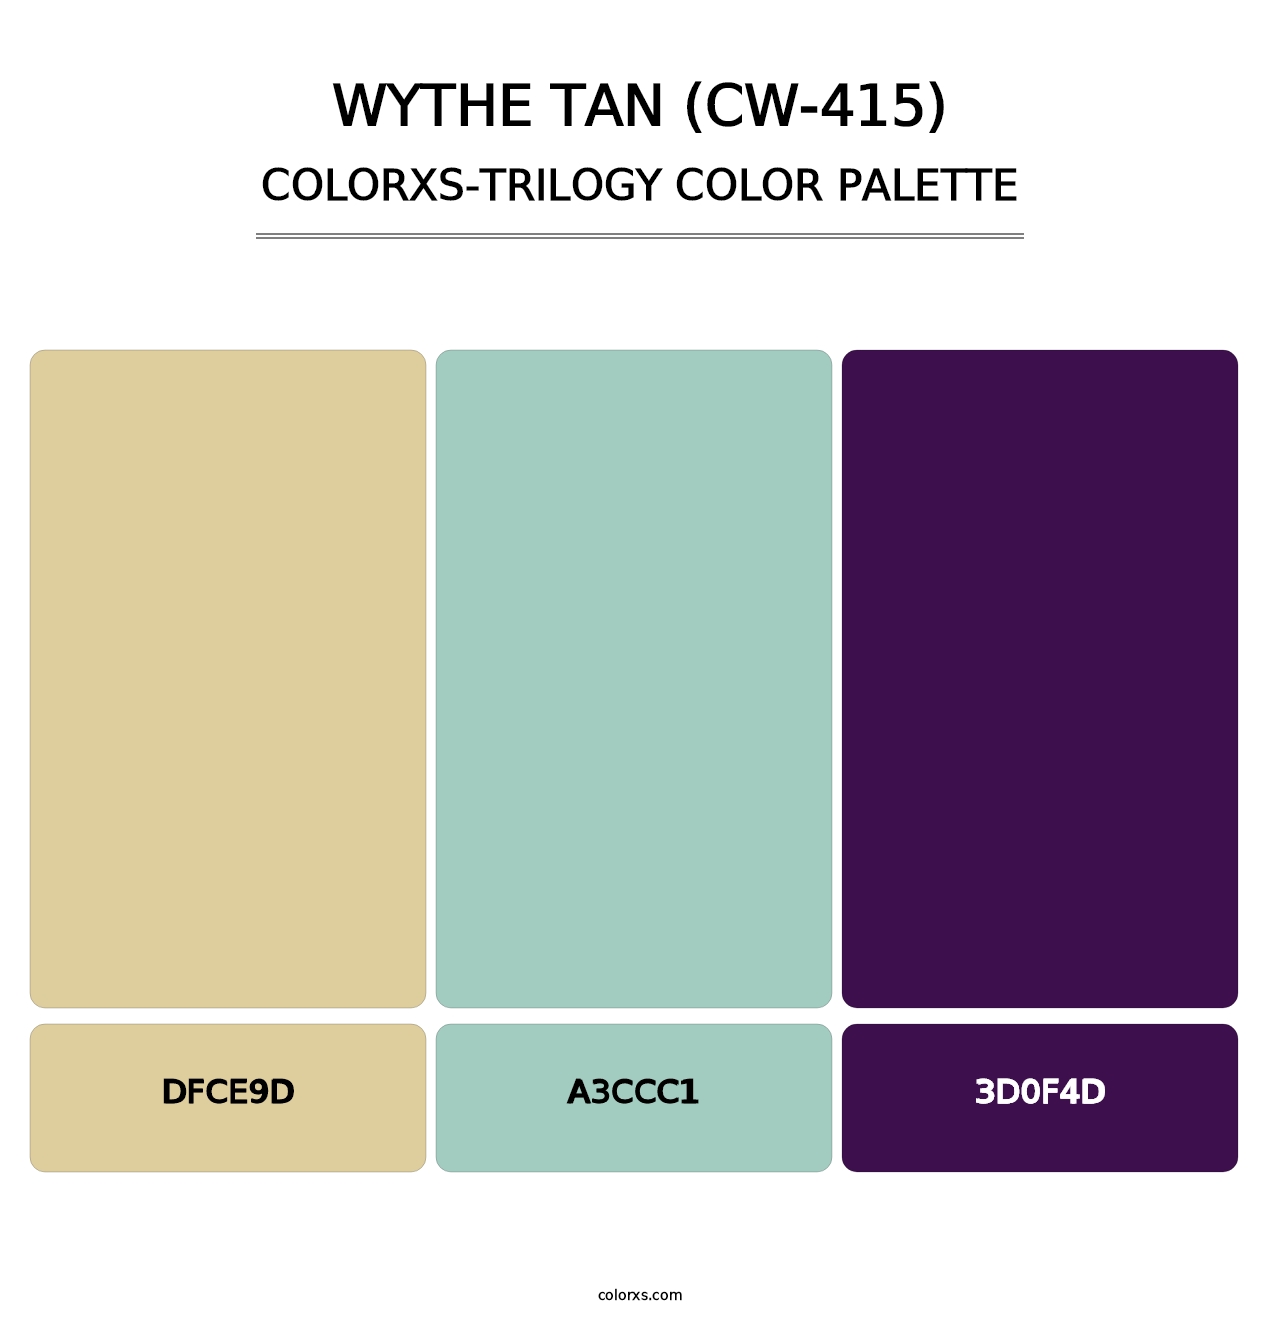 Wythe Tan (CW-415) - Colorxs Trilogy Palette